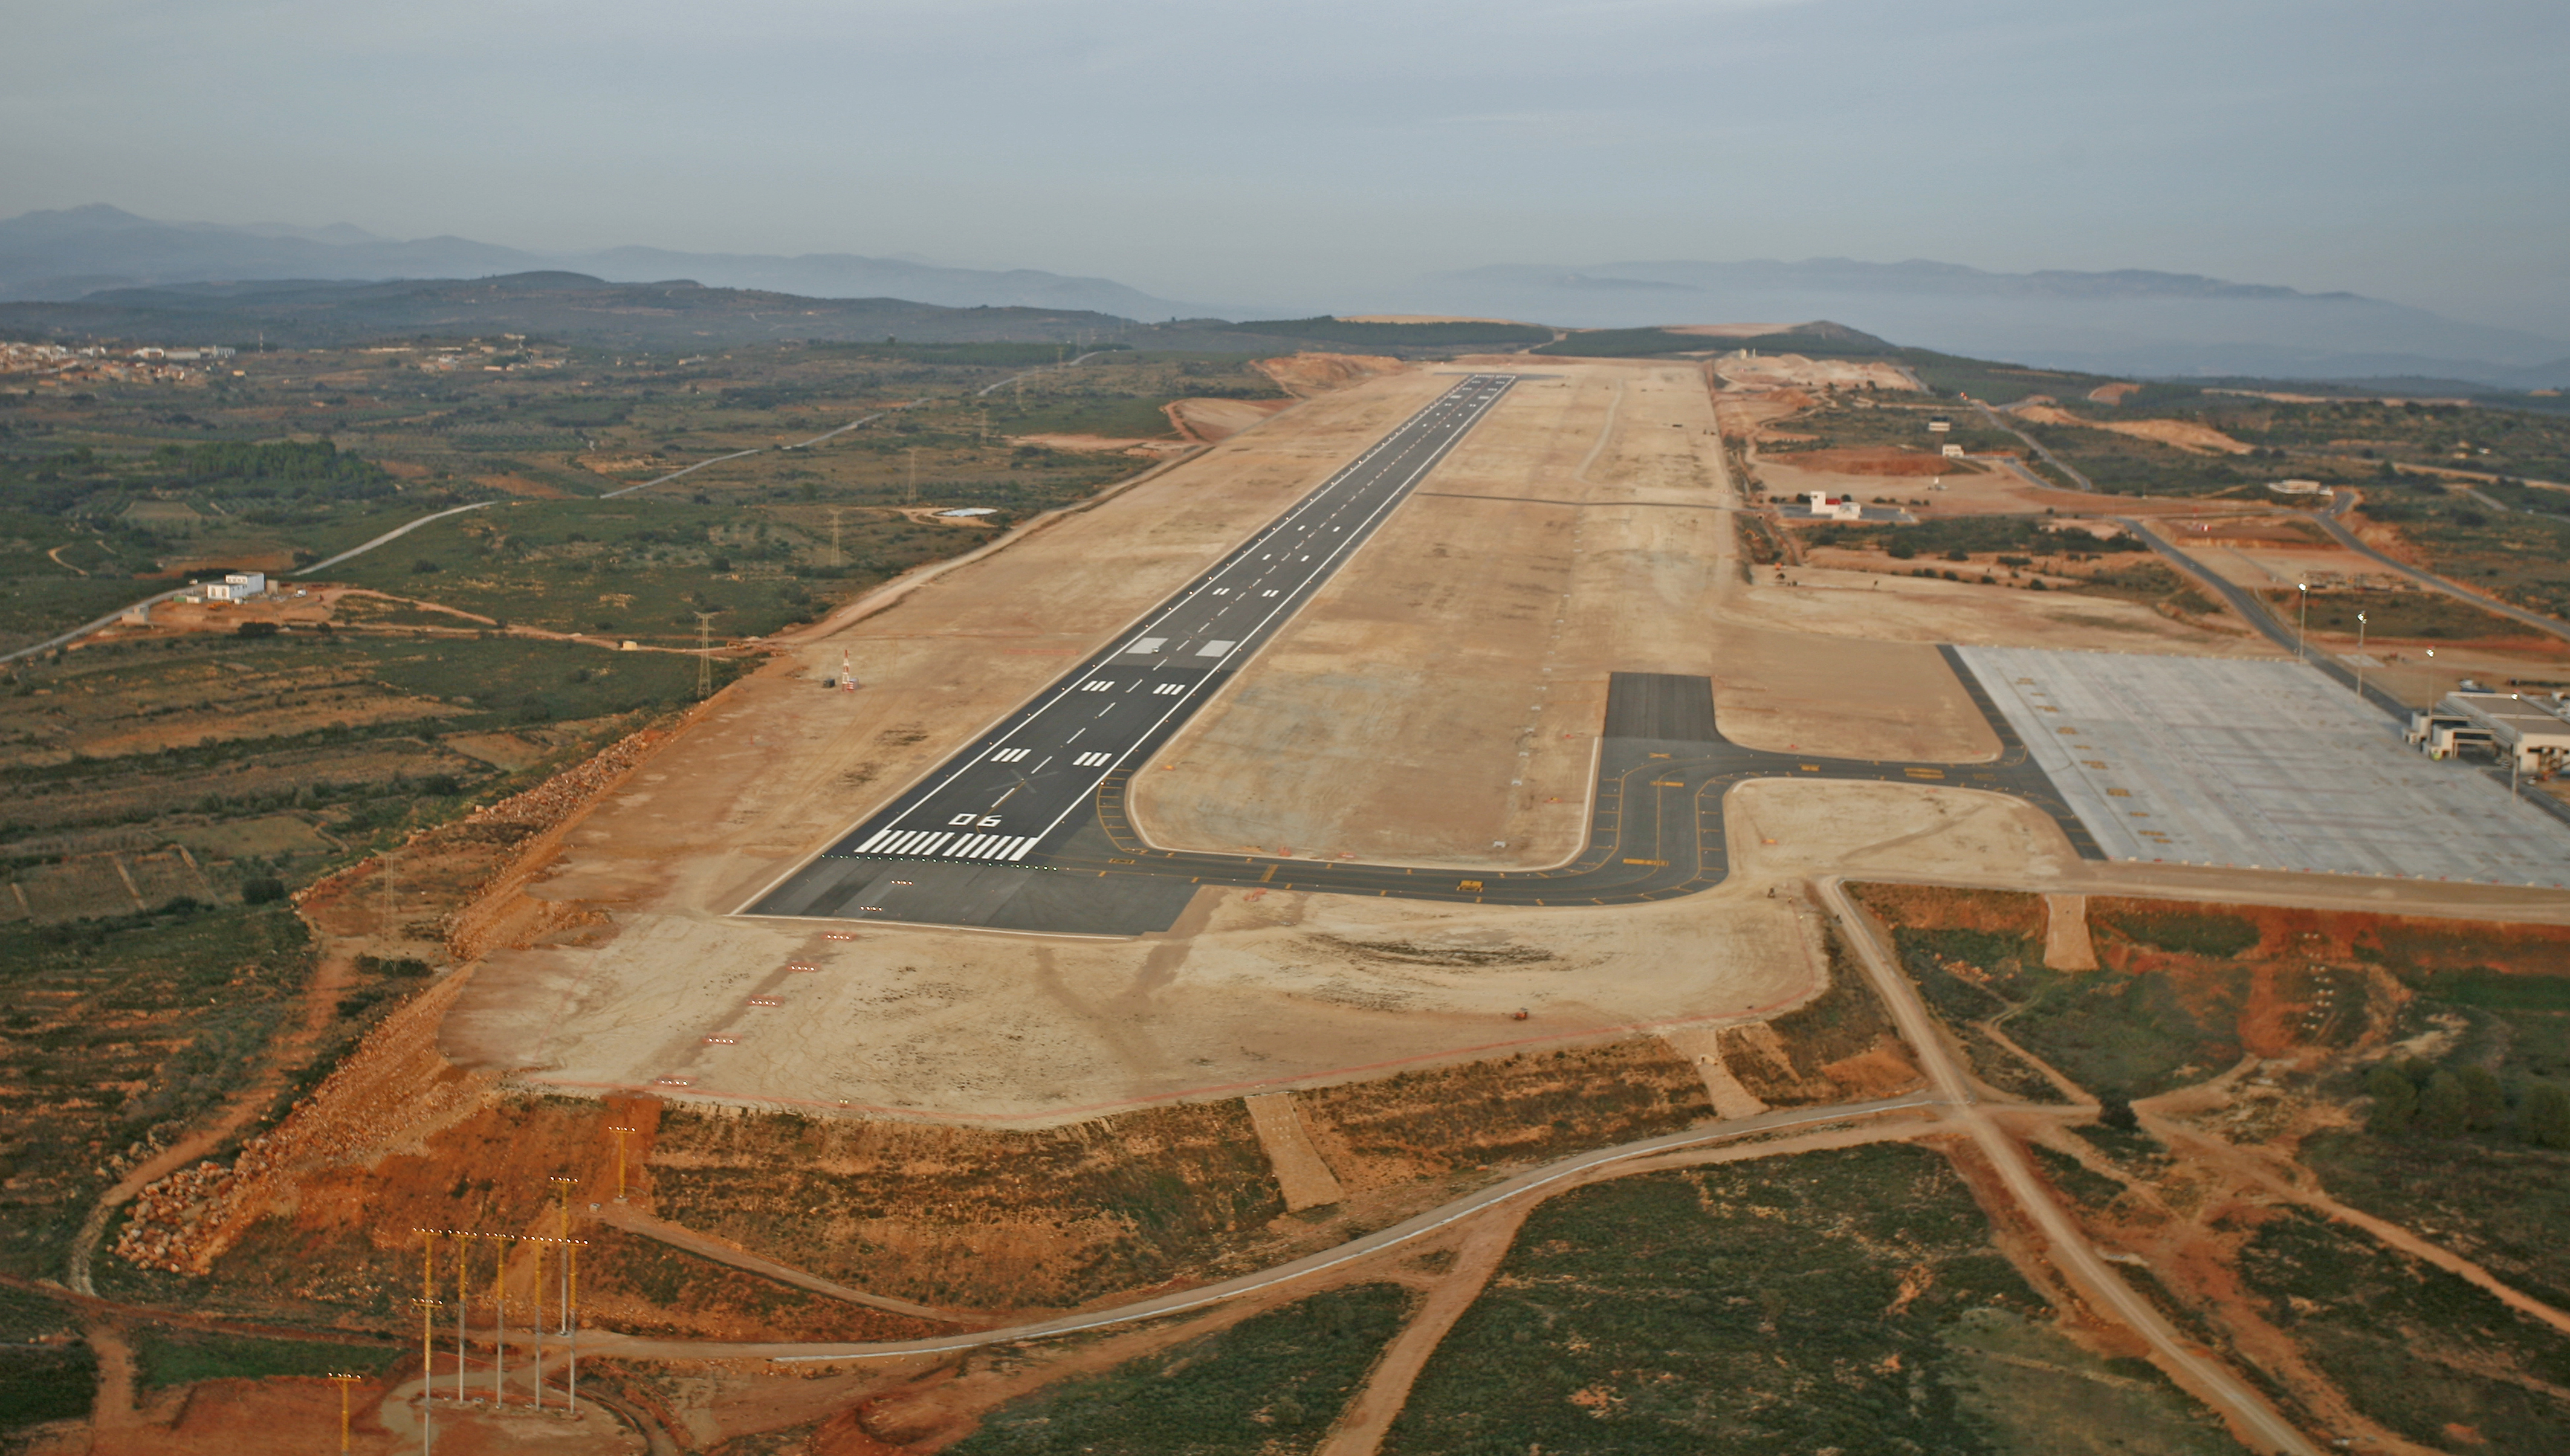 Vista aerea pista Aeropuerto Castellón